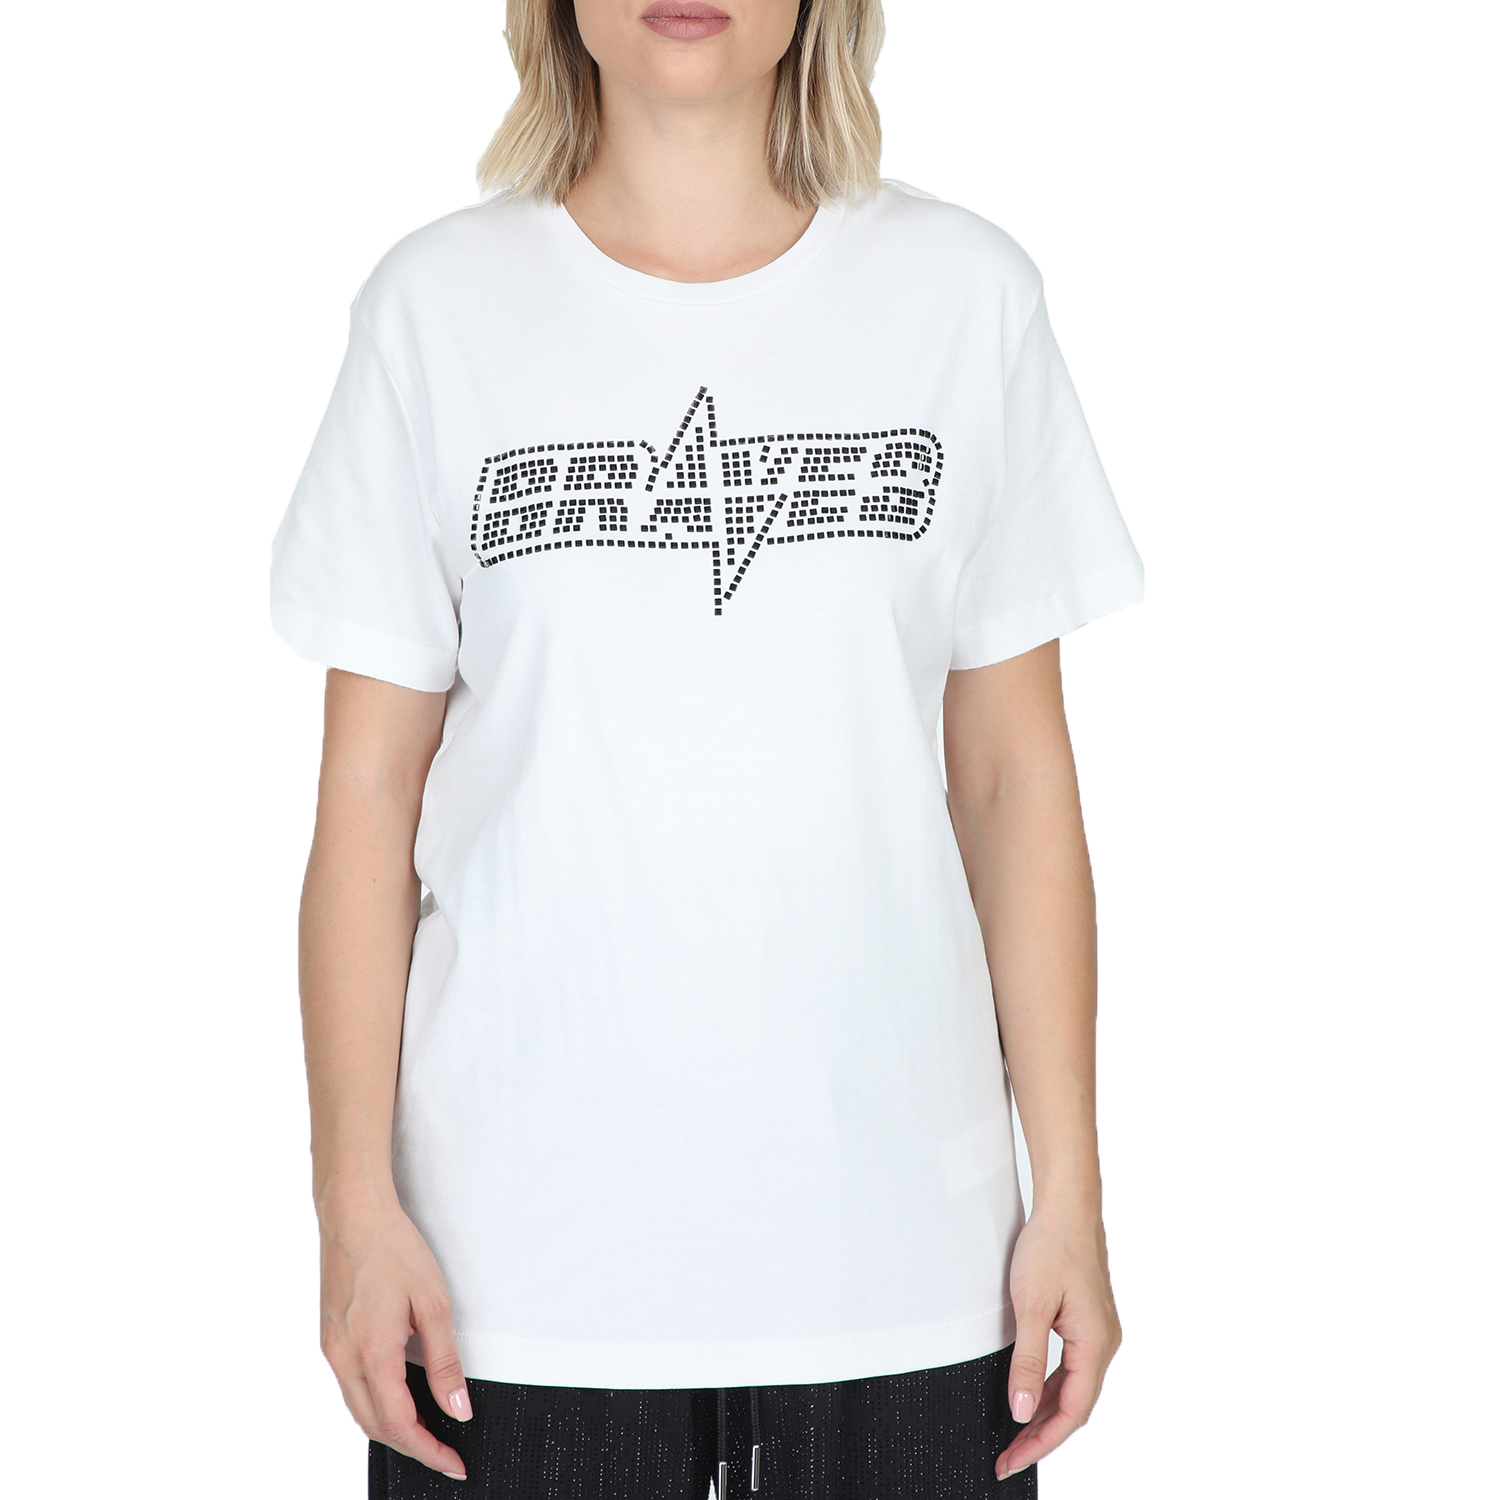 Γυναικεία/Ρούχα/Μπλούζες/Κοντομάνικες DIESEL - Γυναικείο t-shirt DIESEL T-FLAVIA-Y MAGLIETTA λευκό